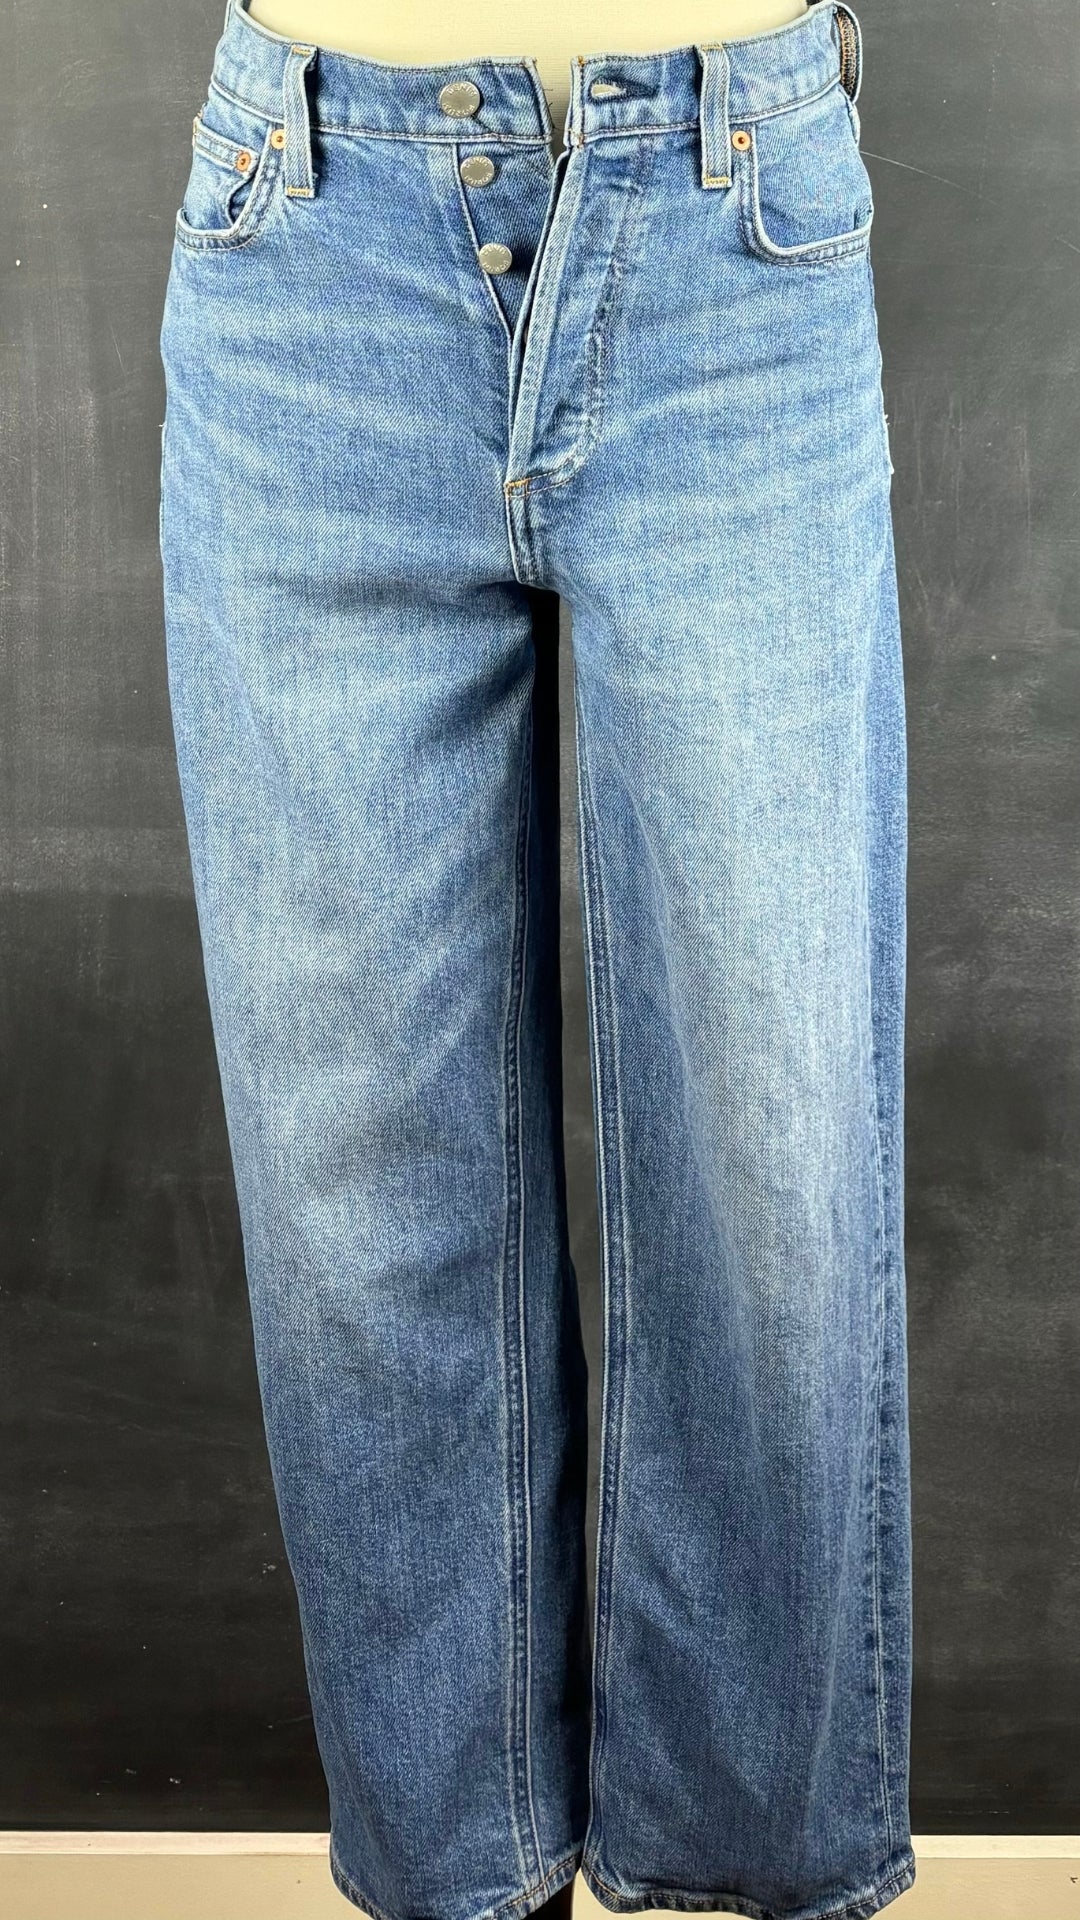 Jeans droit taille haute modèle Arlo Denim Forum, taille 26. Vue de face, sur le mannequin.